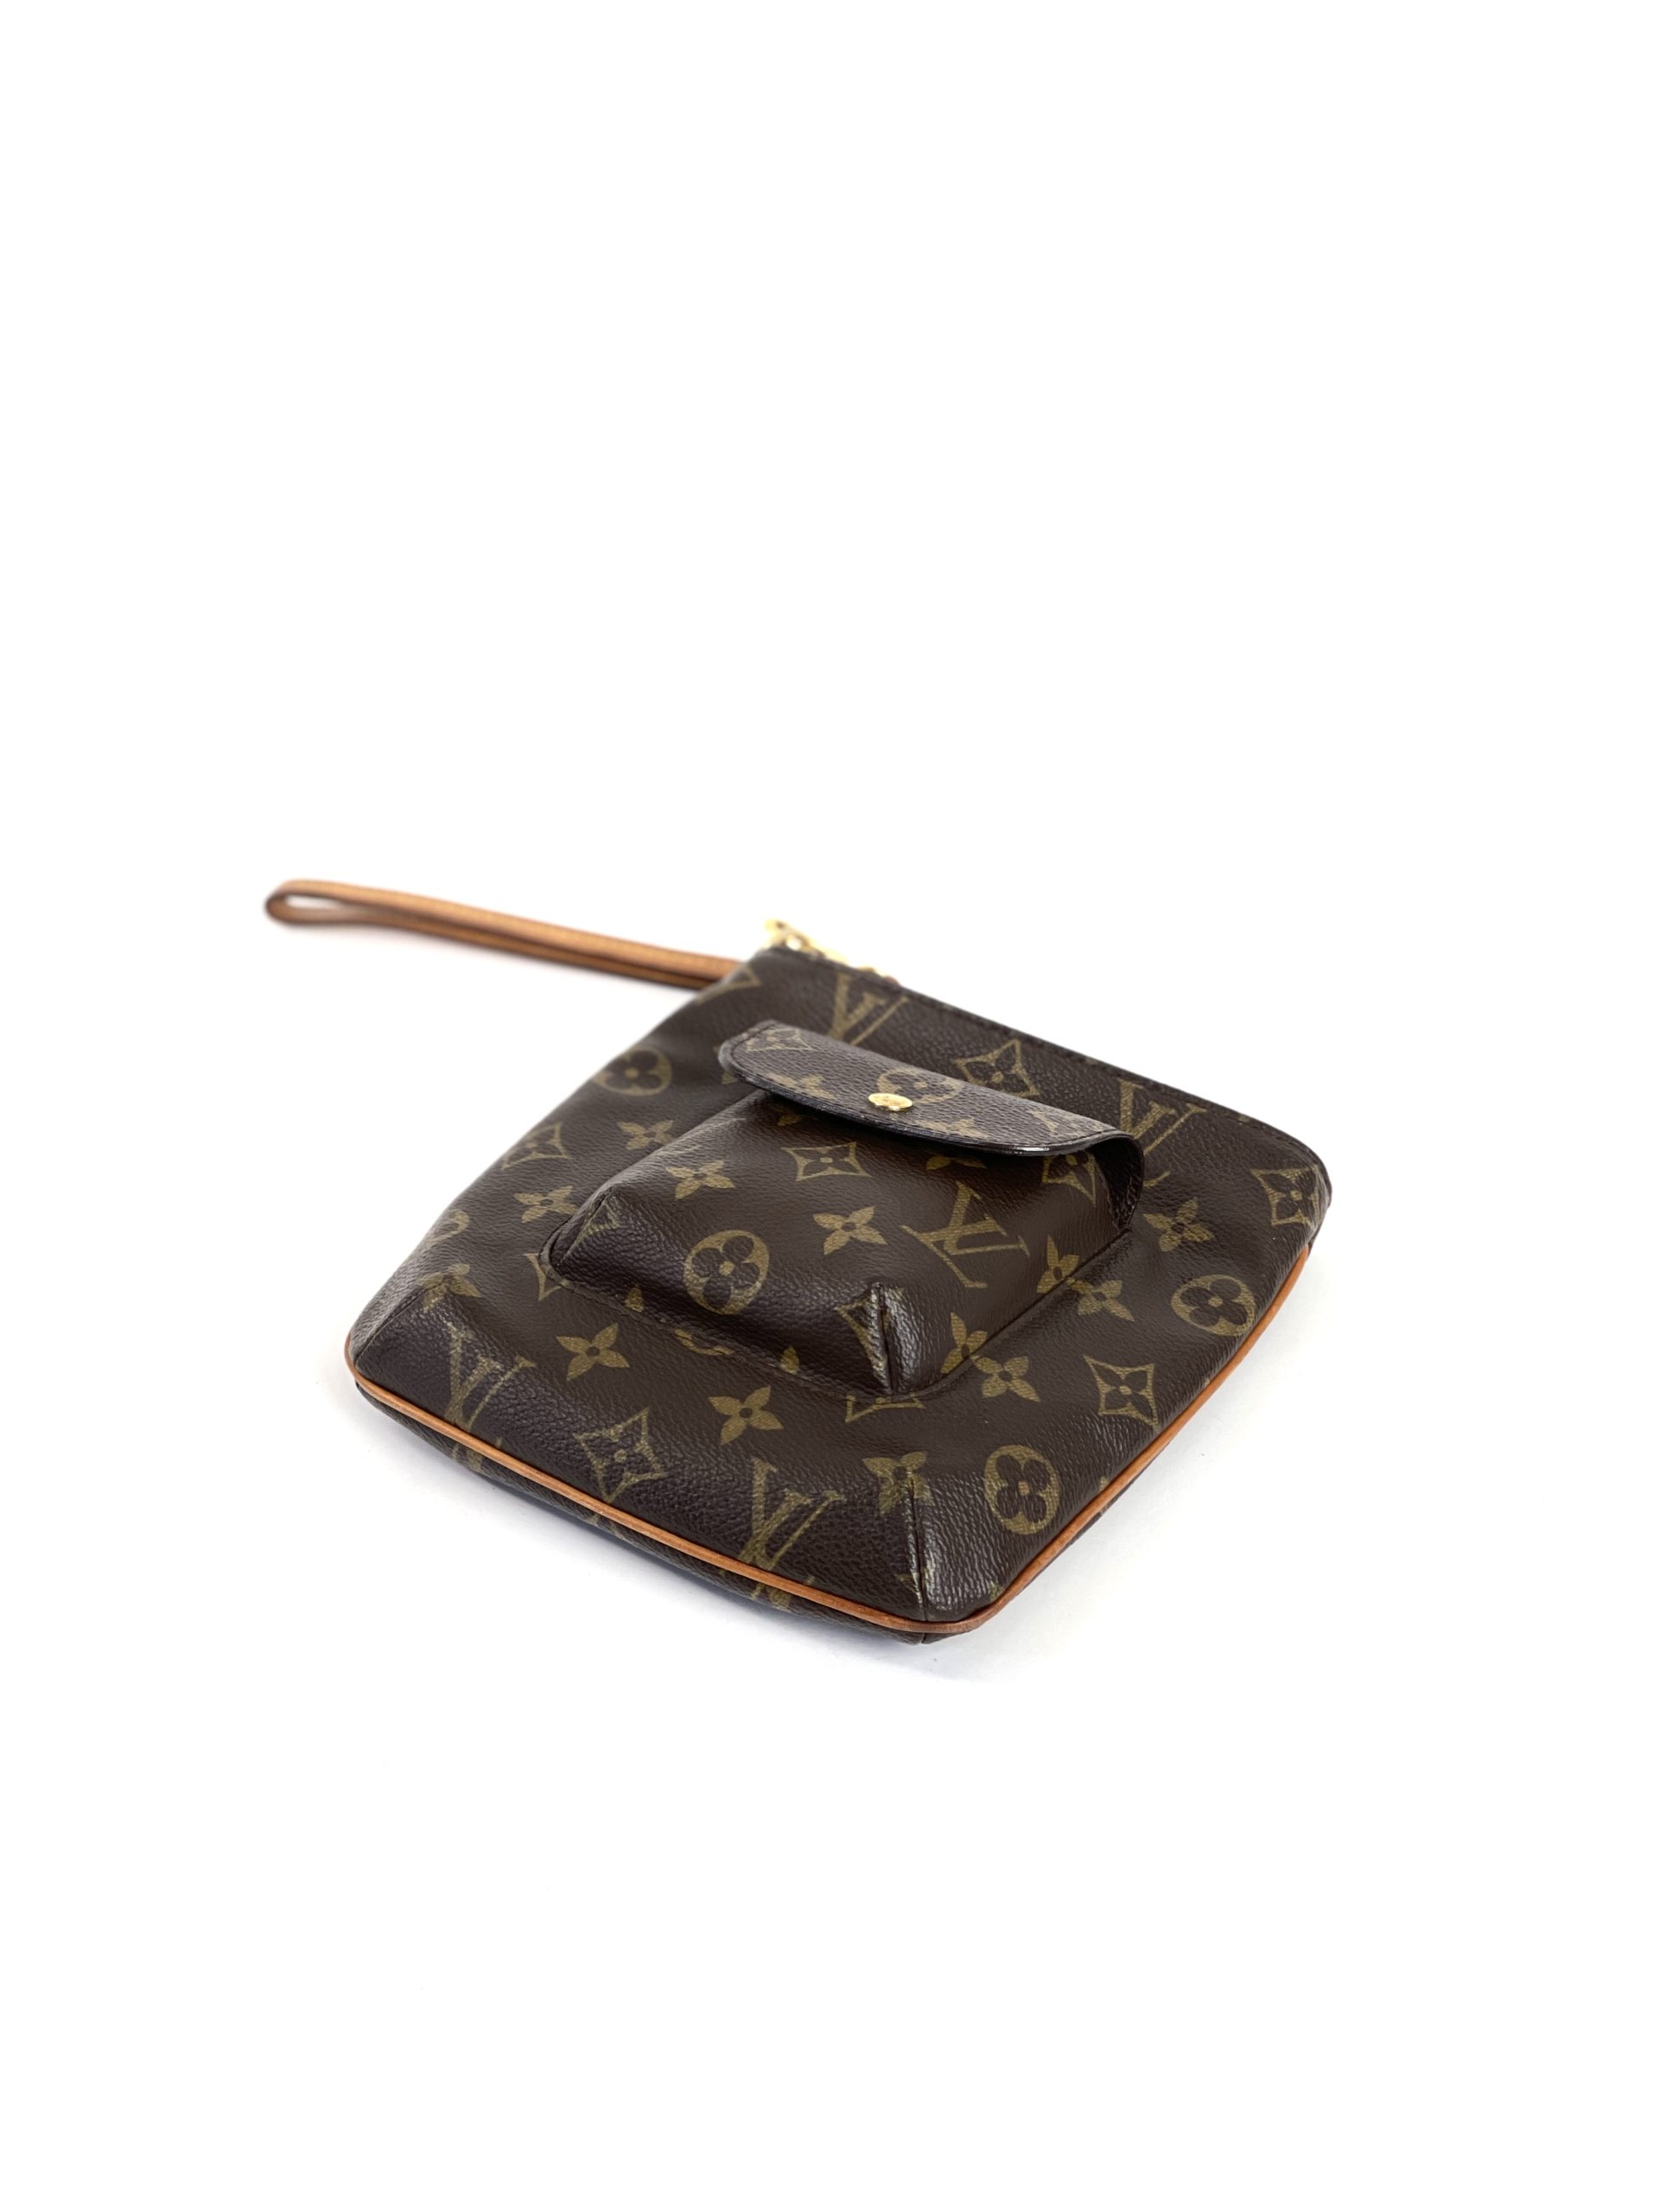 Louis Vuitton Partition Clutch Bag Pouch Mi1002 Purse Monogram M51901